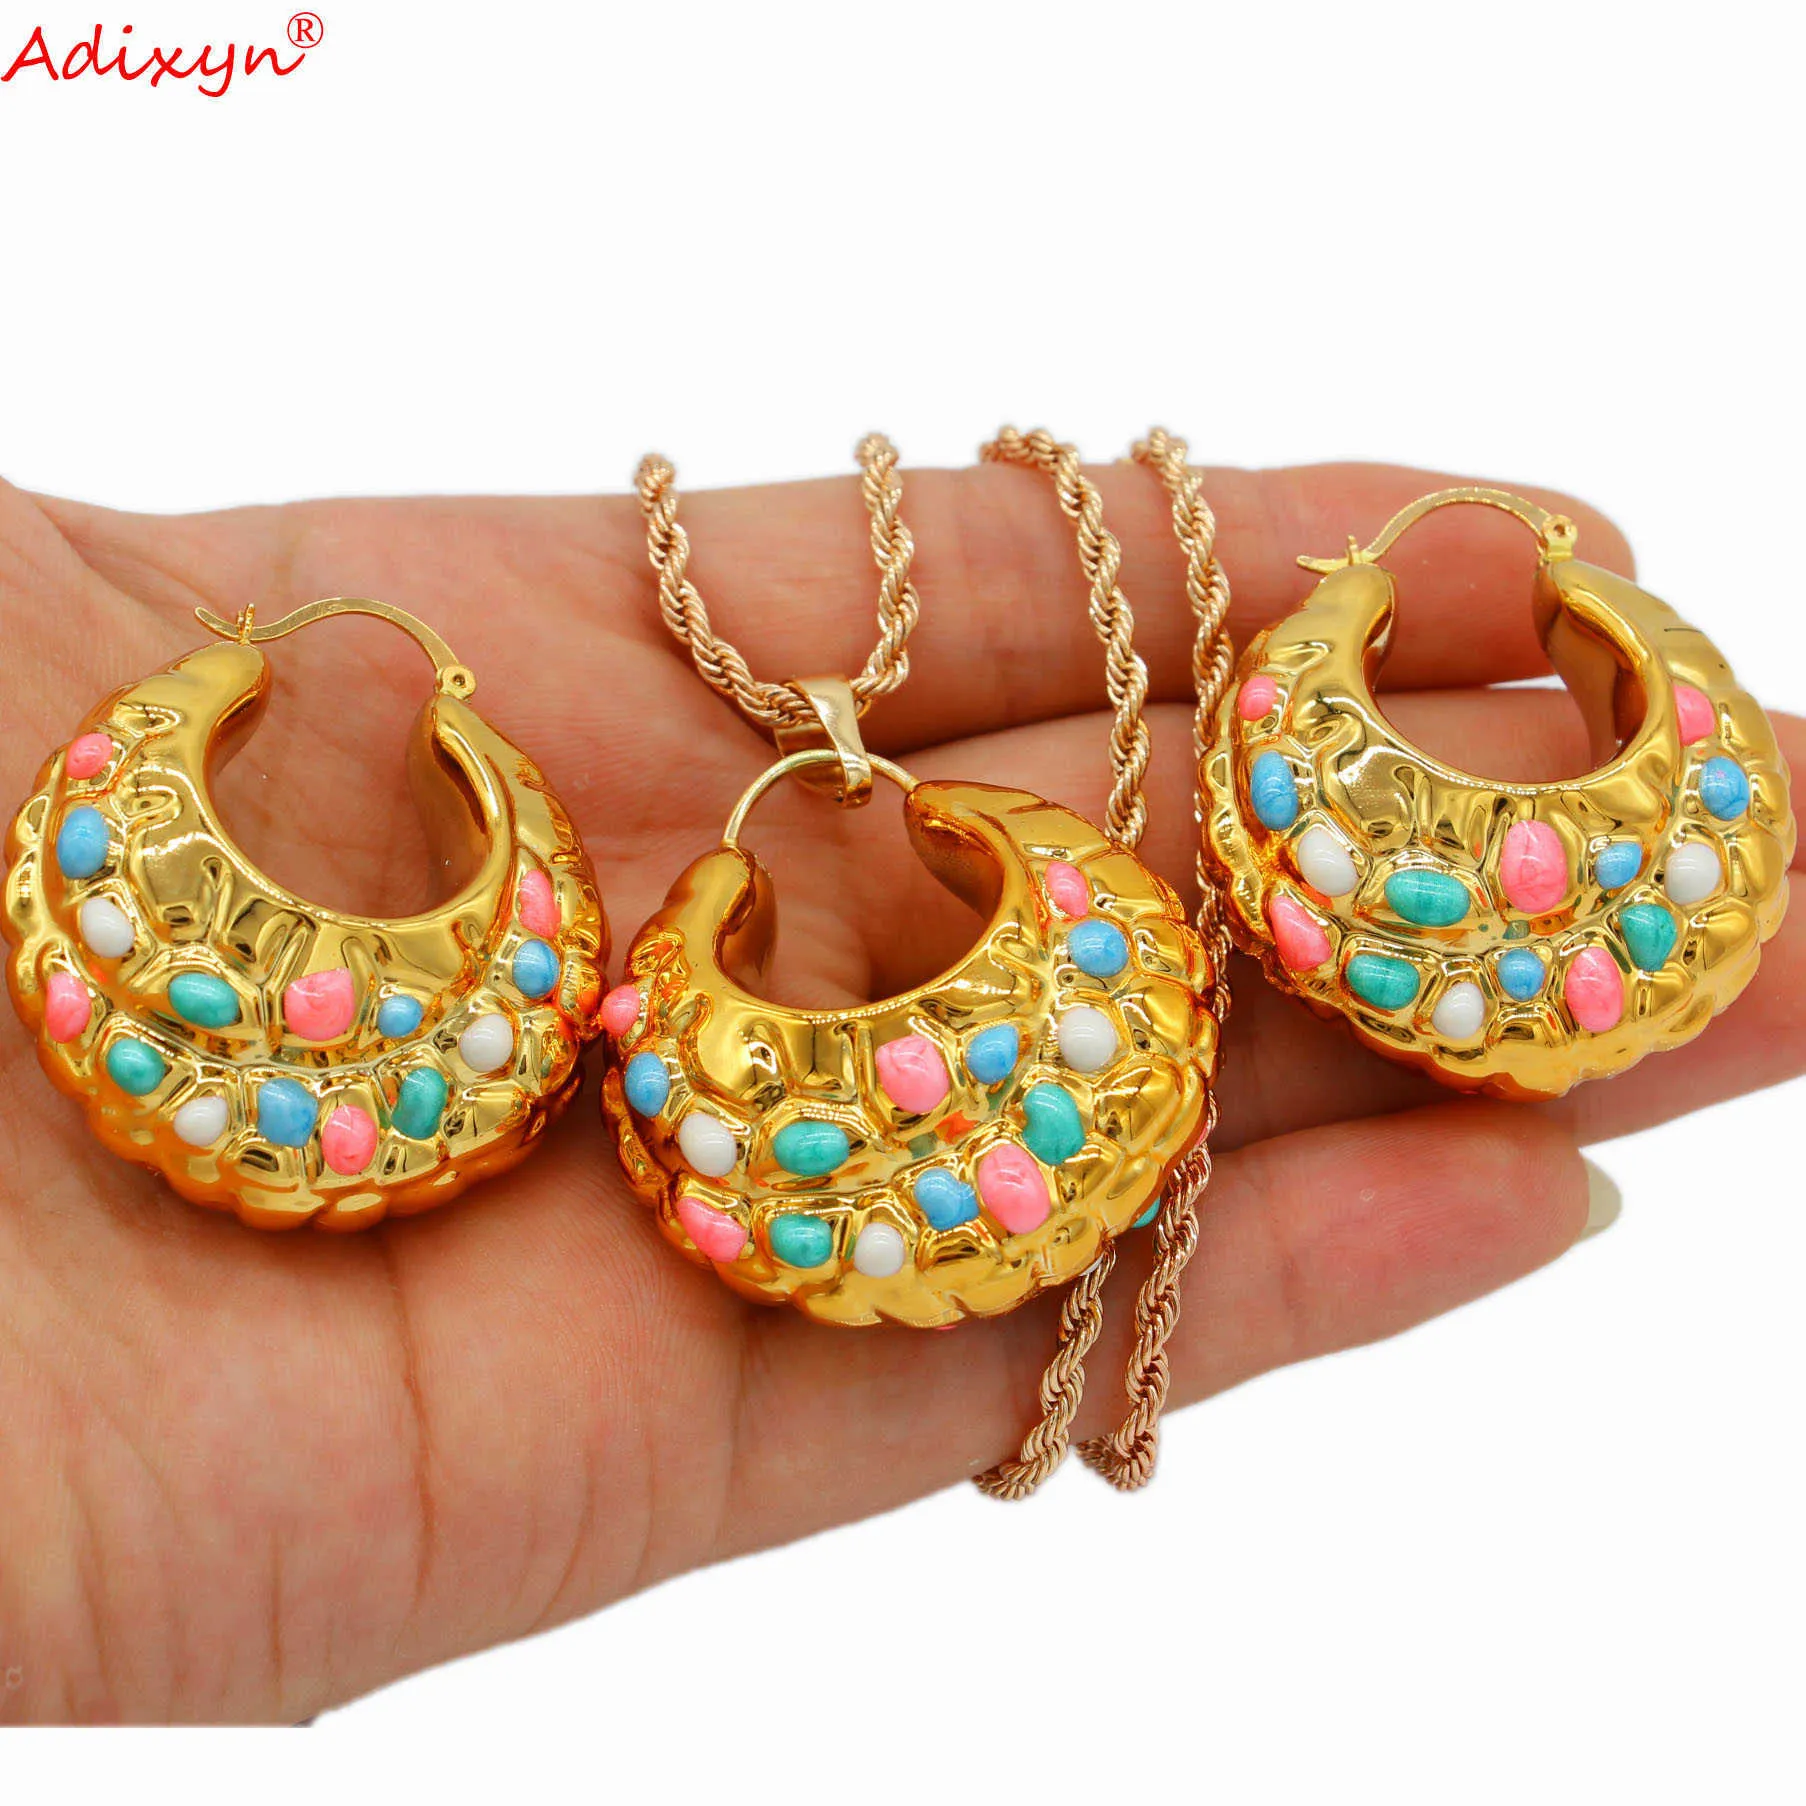 Adixyn luxe multicolore ensemble de bijoux couleur or pendentif collier boucles d'oreilles pour femmes filles fête anniversaire ethnique cadeaux n04223 H1022